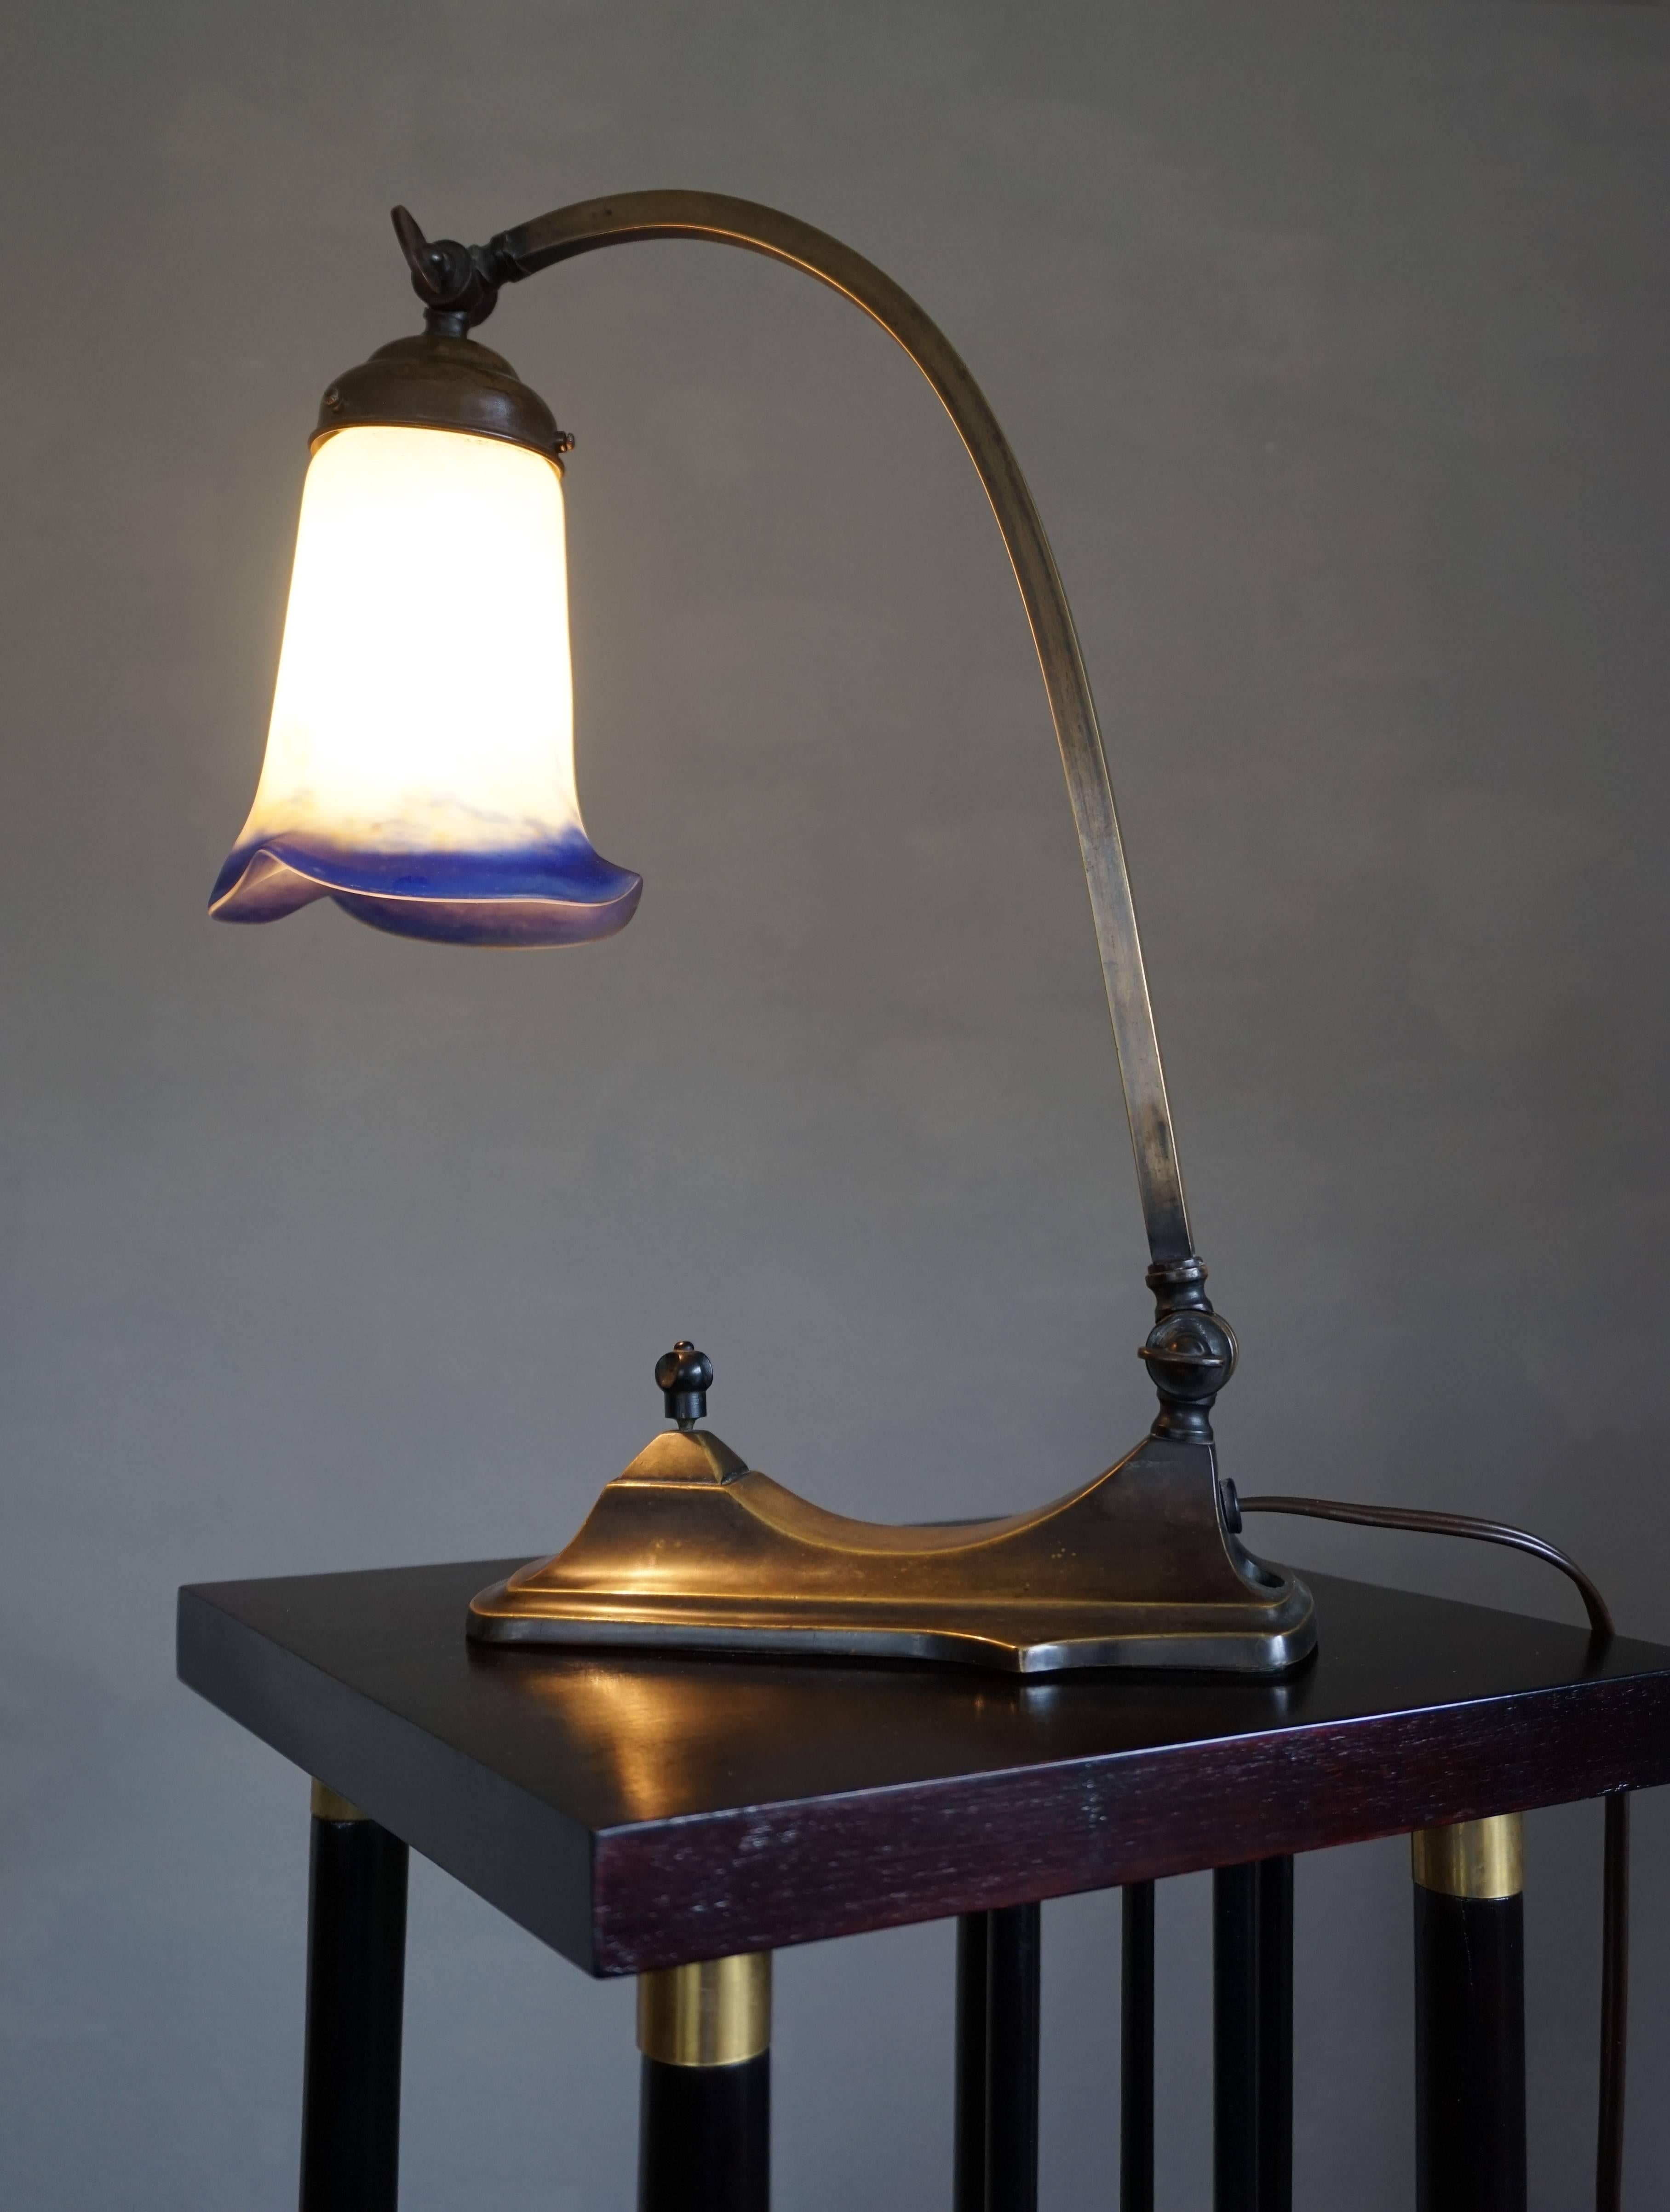 Sehr gut gestaltete und hochwertig verarbeitete französische Tischlampe.

Diese seltene und stilvolle Art-Déco-Tischlampe ist sowohl bei eingeschaltetem als auch bei ausgeschaltetem Licht eine wahre Augenweide. Mit einem verstellbaren Arm und Schirm